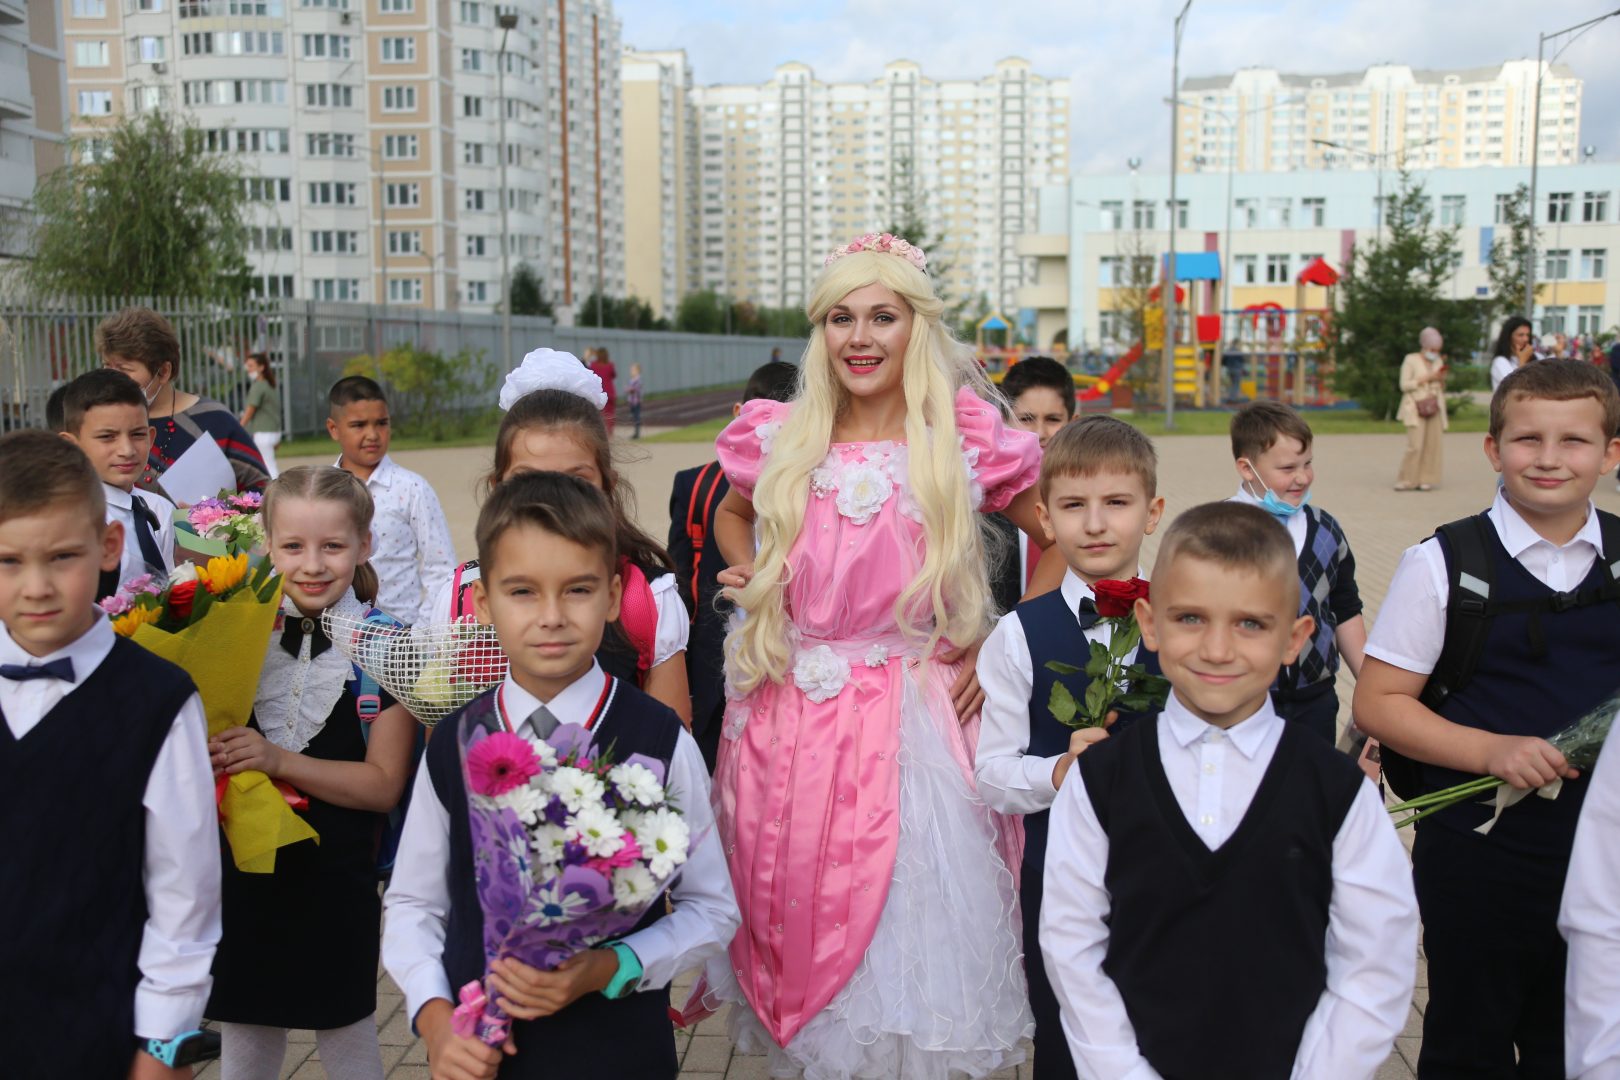 Праздник в Московском запомнится долгожданными веселыми встречами, Фото предоставили в пресс-службе префектуры ТиНАО